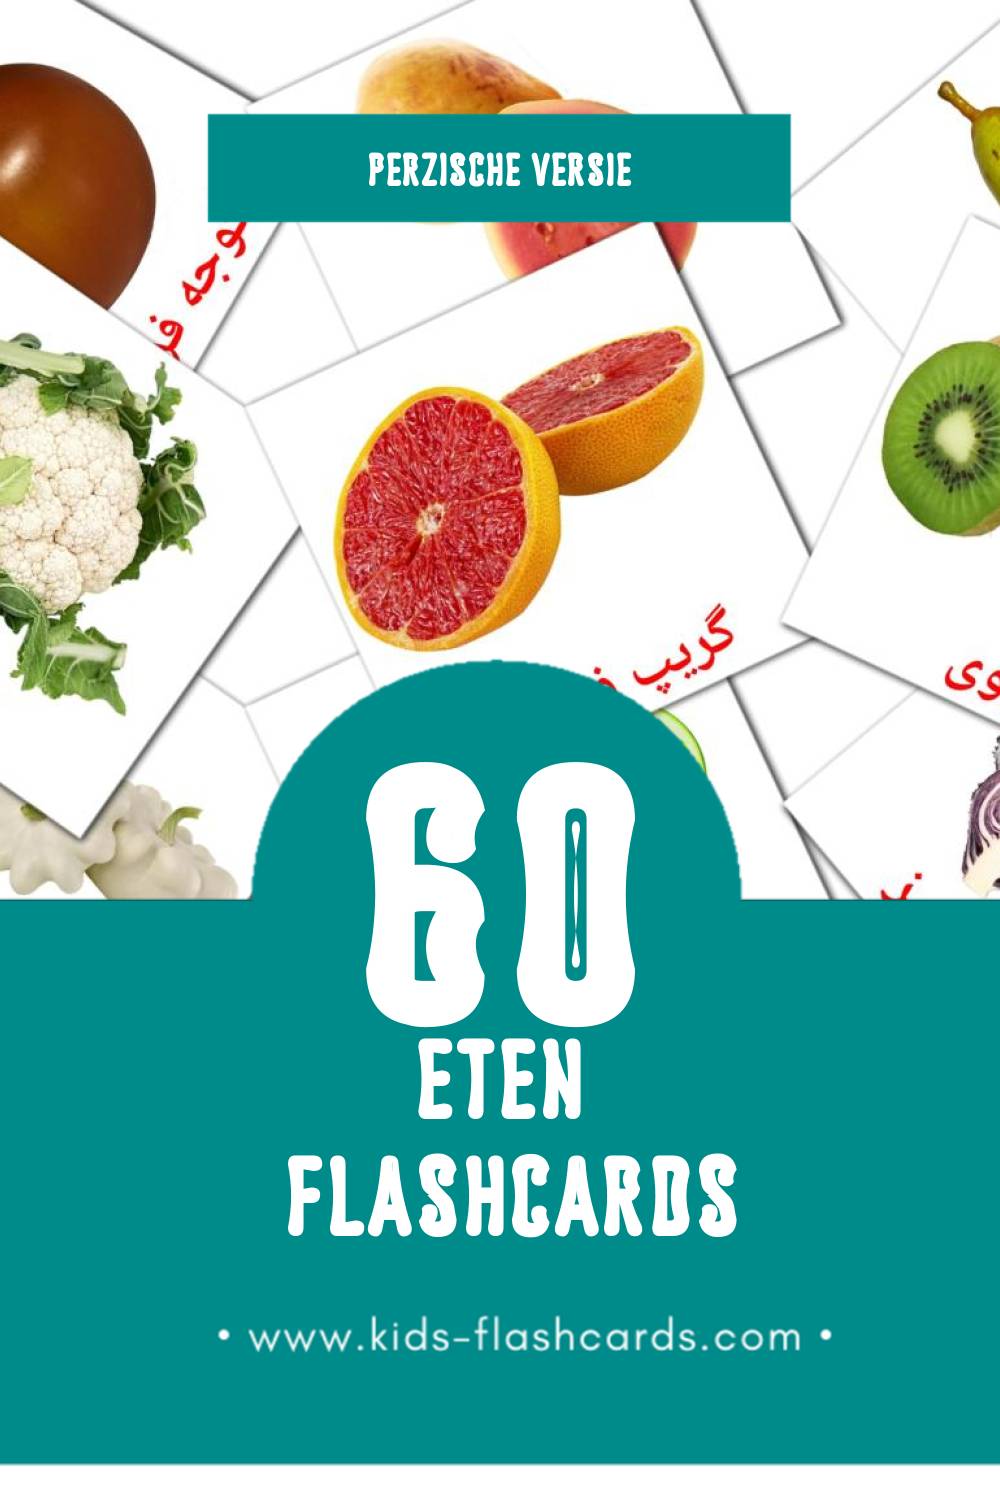 Visuele غذا Flashcards voor Kleuters (60 kaarten in het Perzisch)